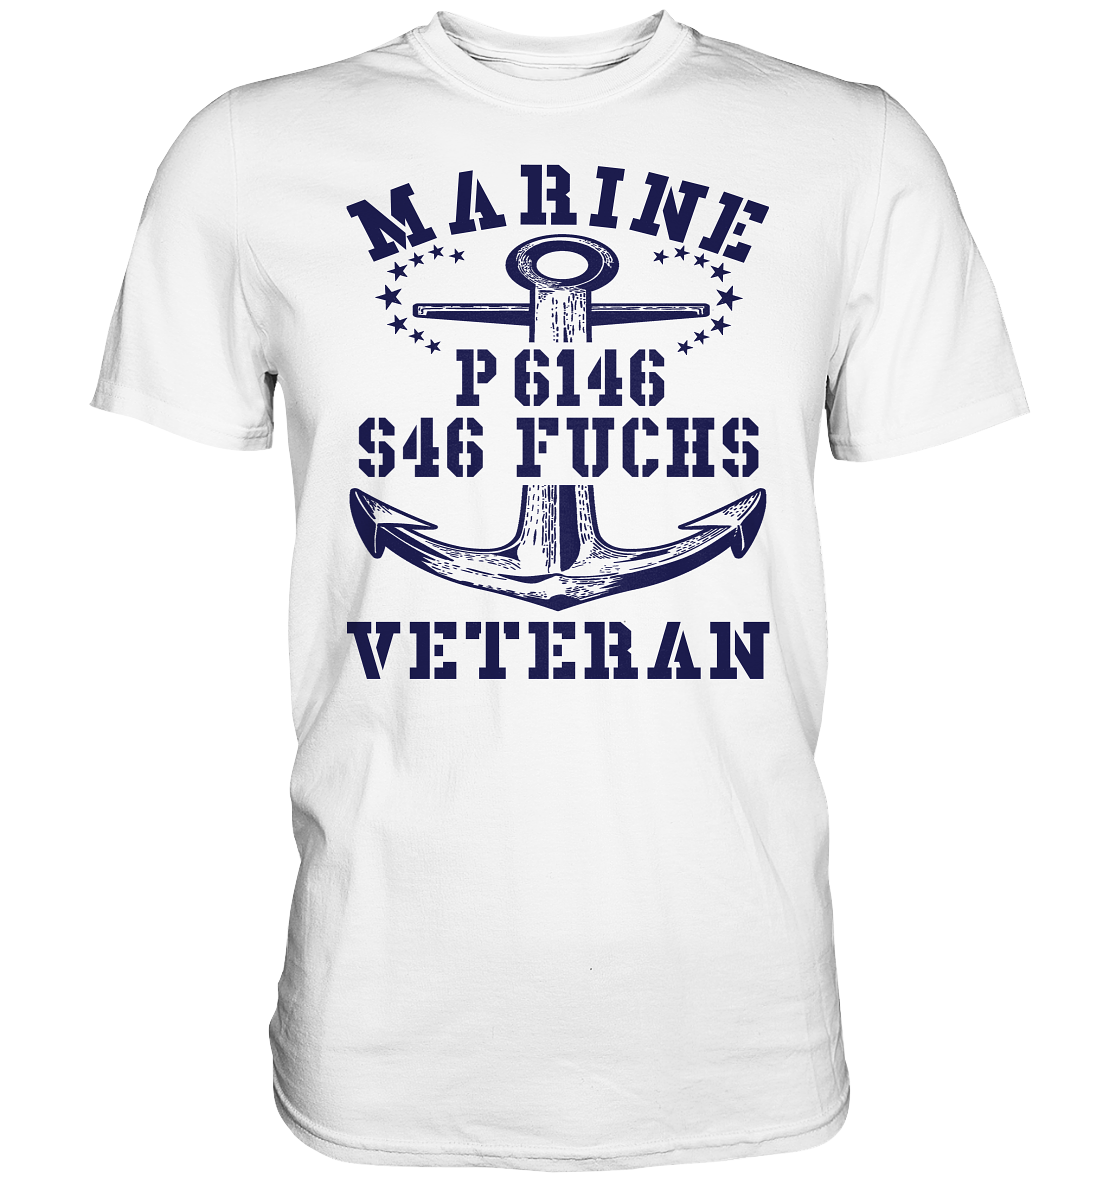 P6146 S46 FUCHS Marine Veteran - Premium Shirt